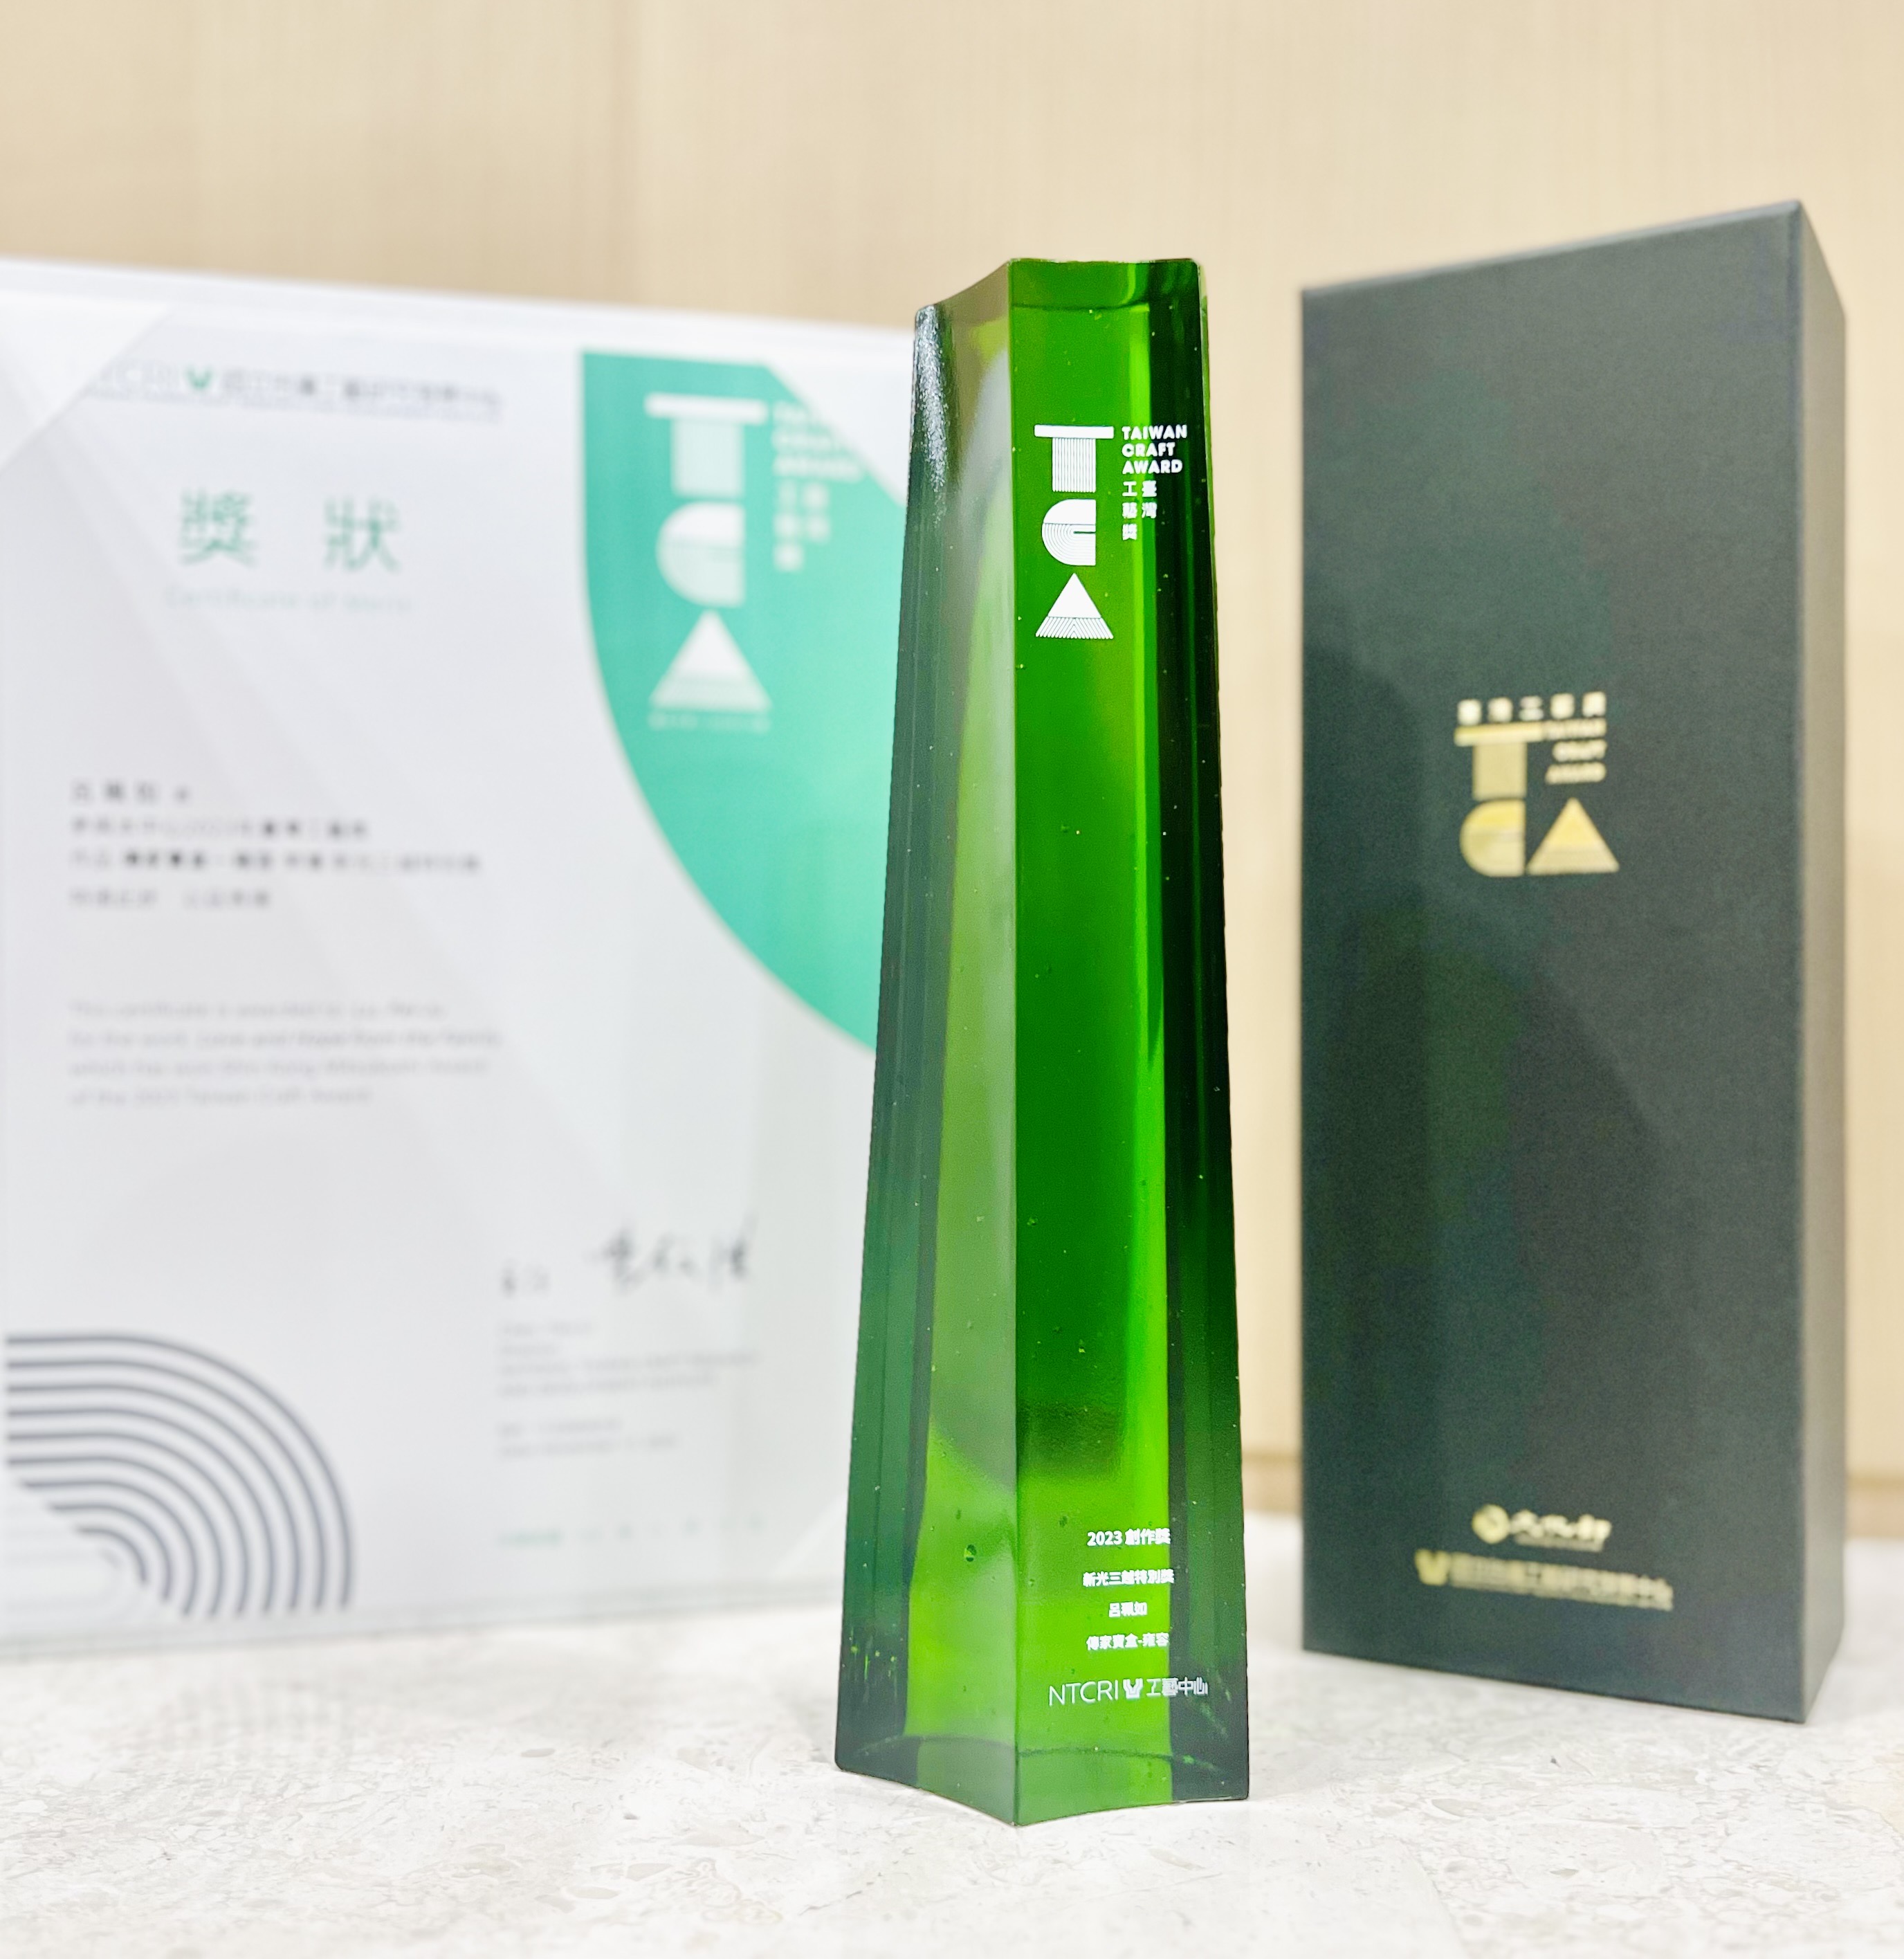 木箔藝術精品-雍容傳家寶盒榮獲新光三越特別獎!